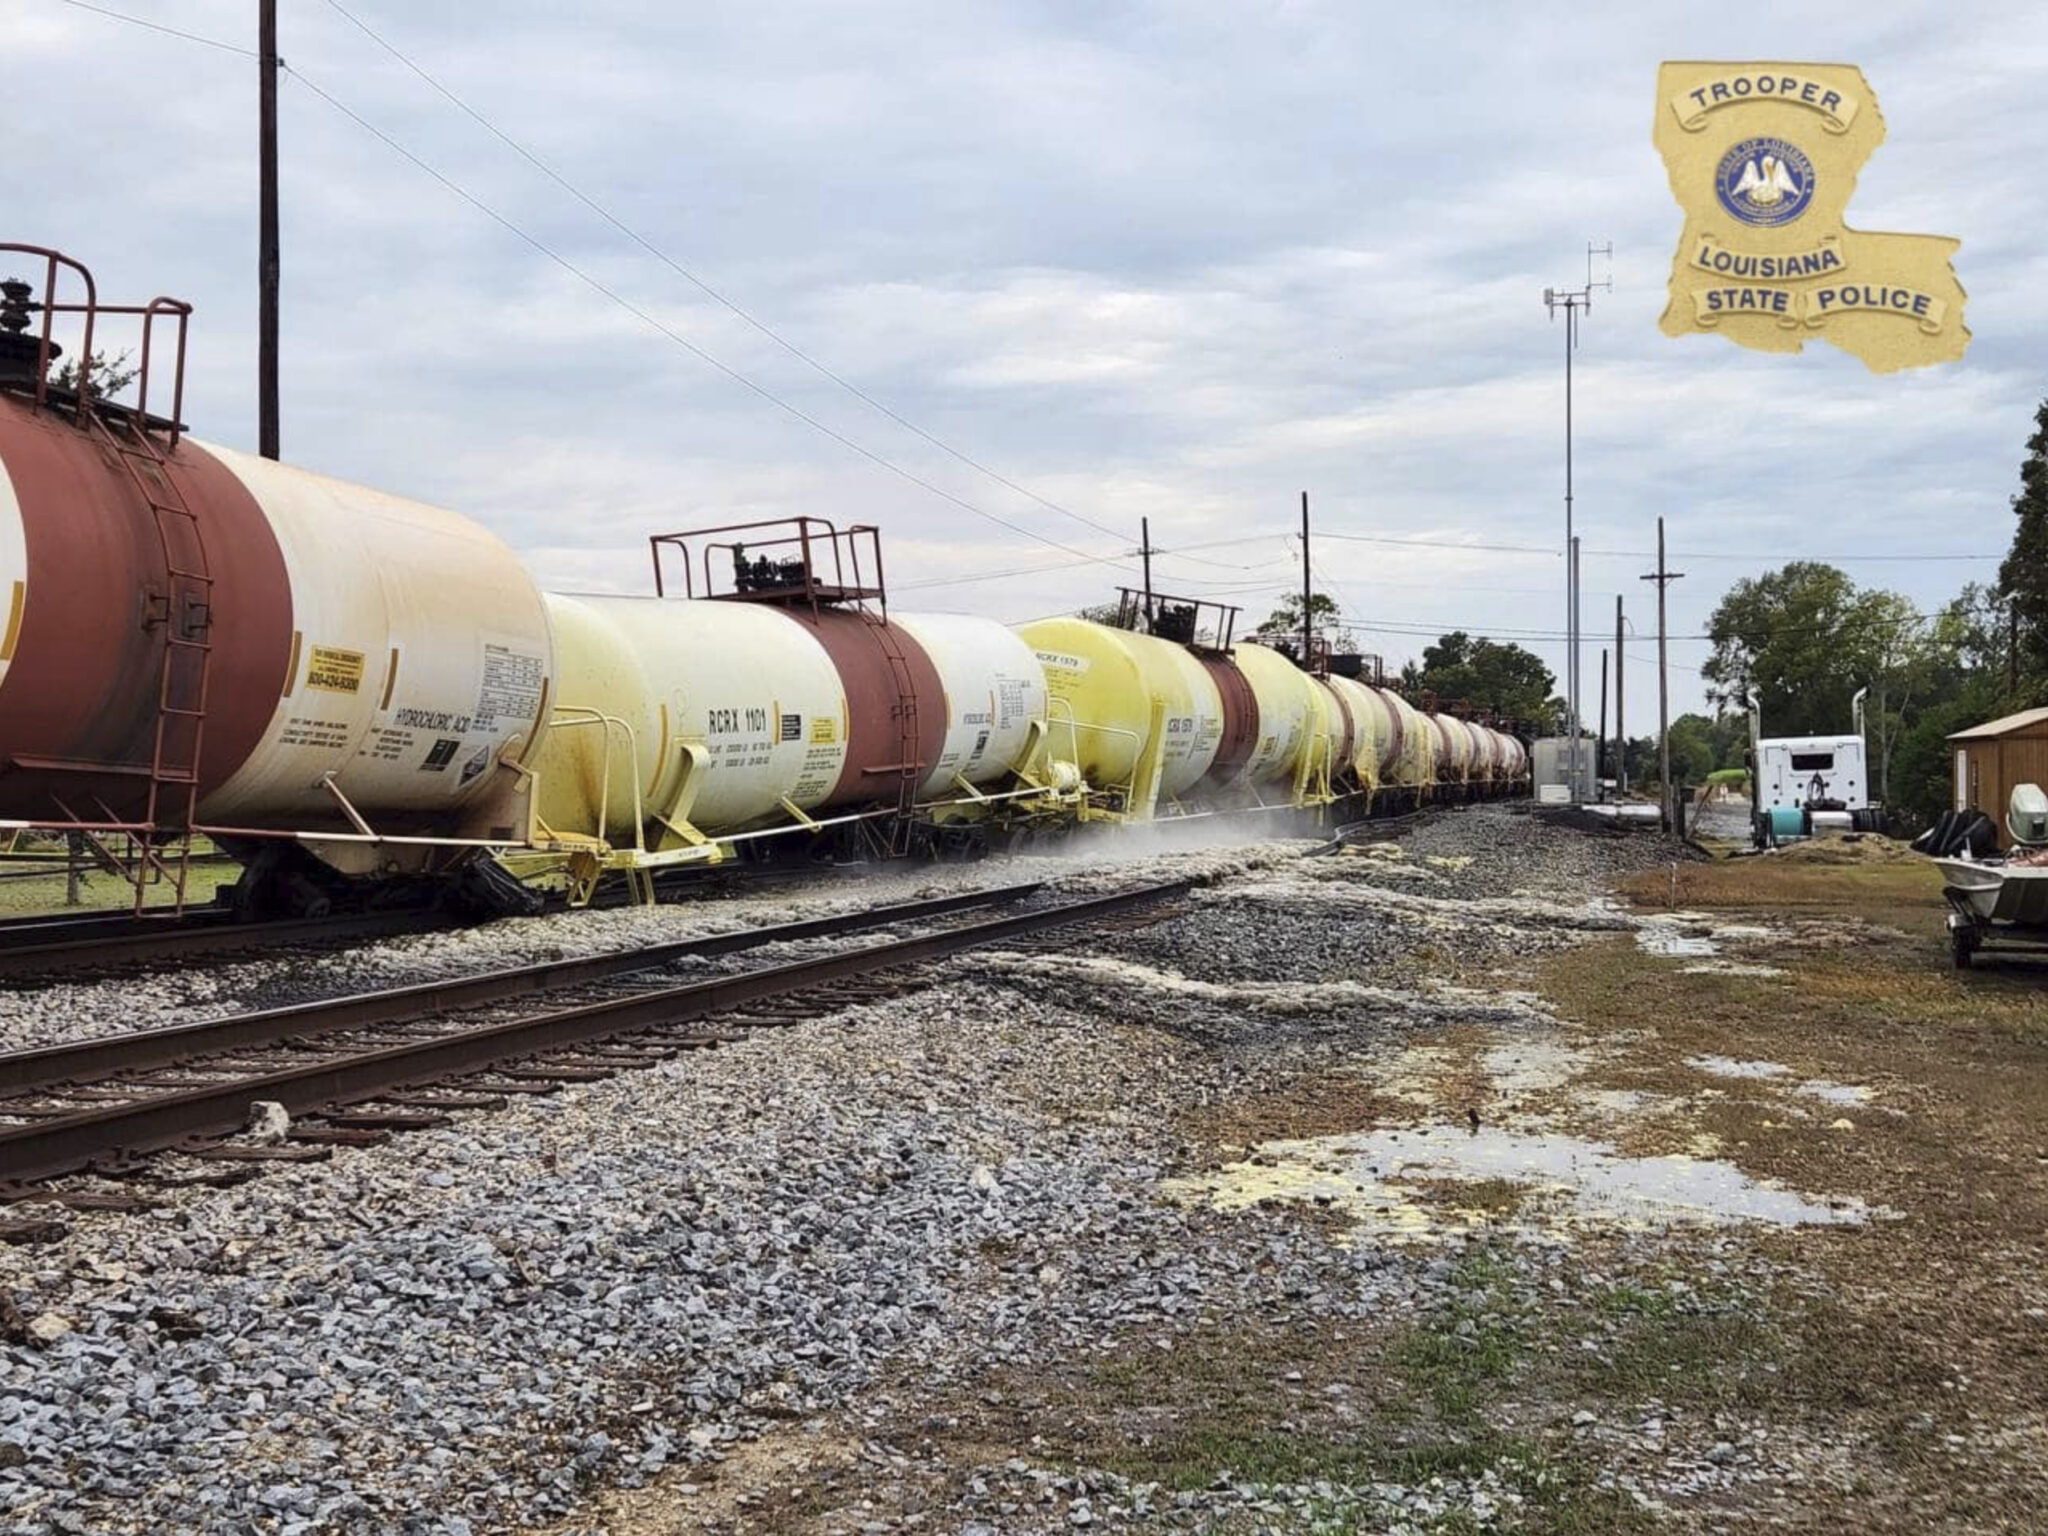 Train Derailment, Acid Leak Prompt Evacuations in Louisiana